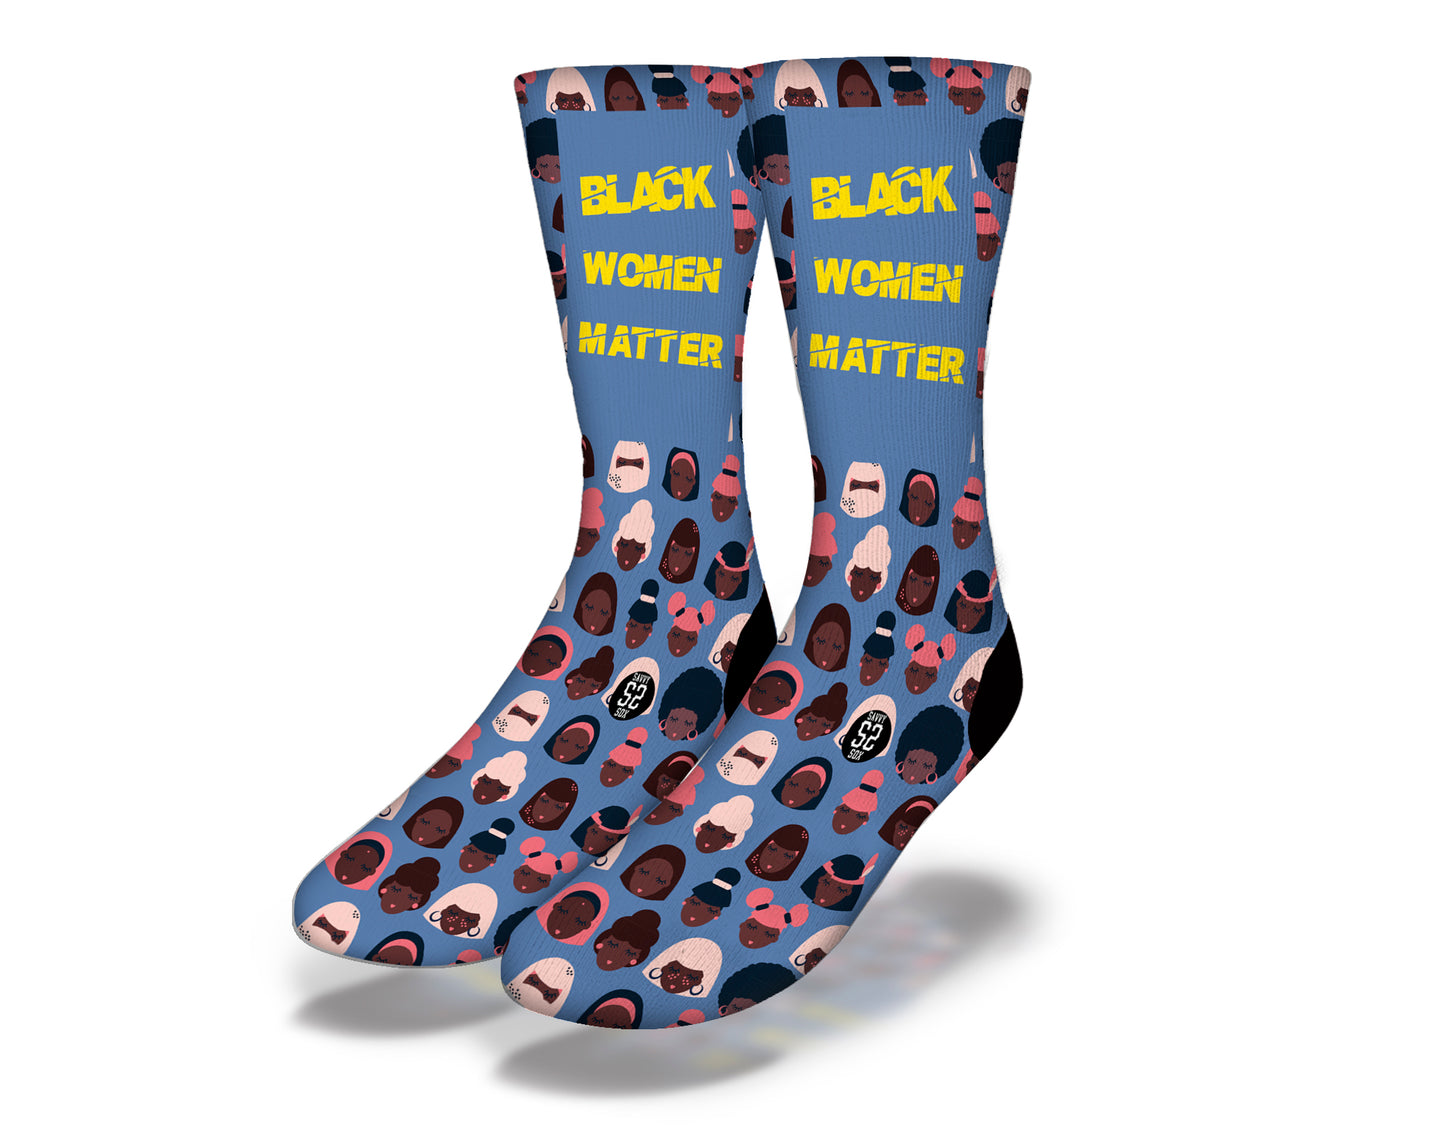 Black Women's Socks Matter